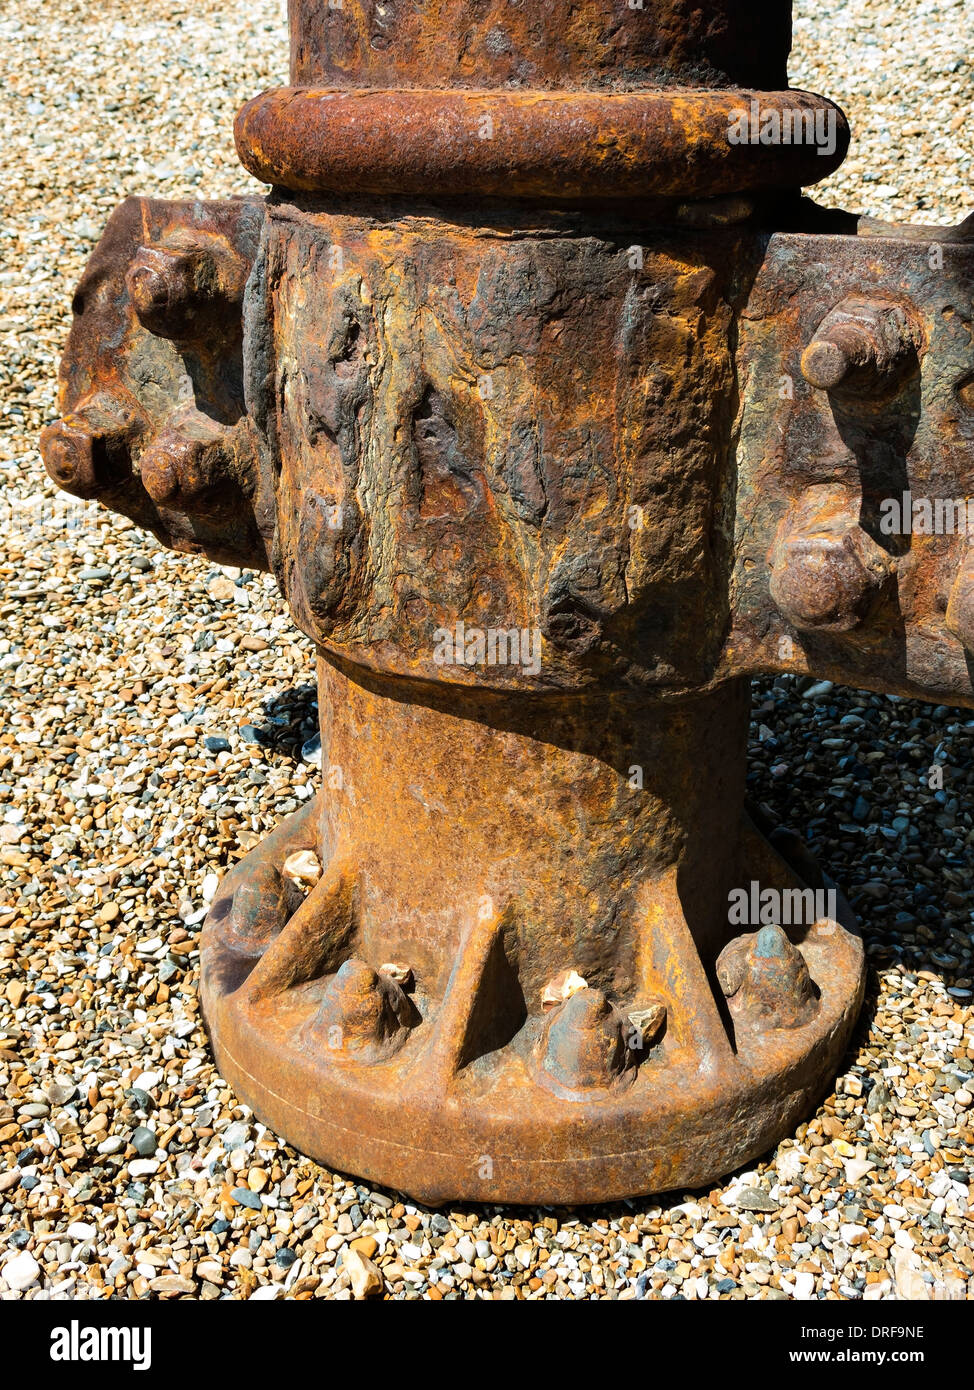 Gran marrón rojiza de hierro fundido oxidado metal corroído pier puntal de apoyo, Eastbourne, East Sussex, Inglaterra, Reino Unido. Foto de stock